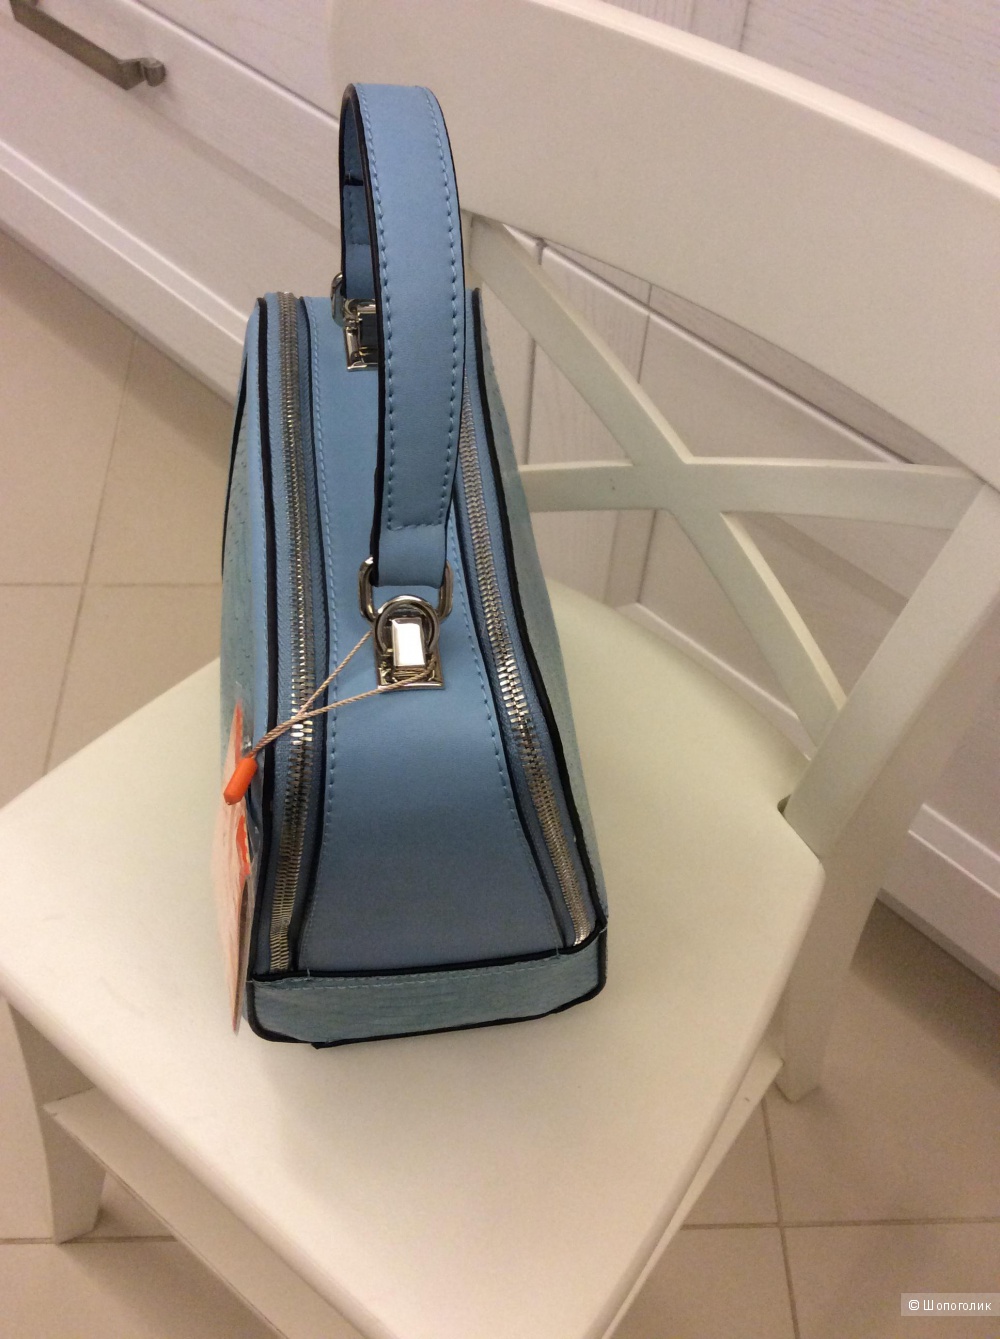 Новая небольшая сумочка красивого голубого цвета